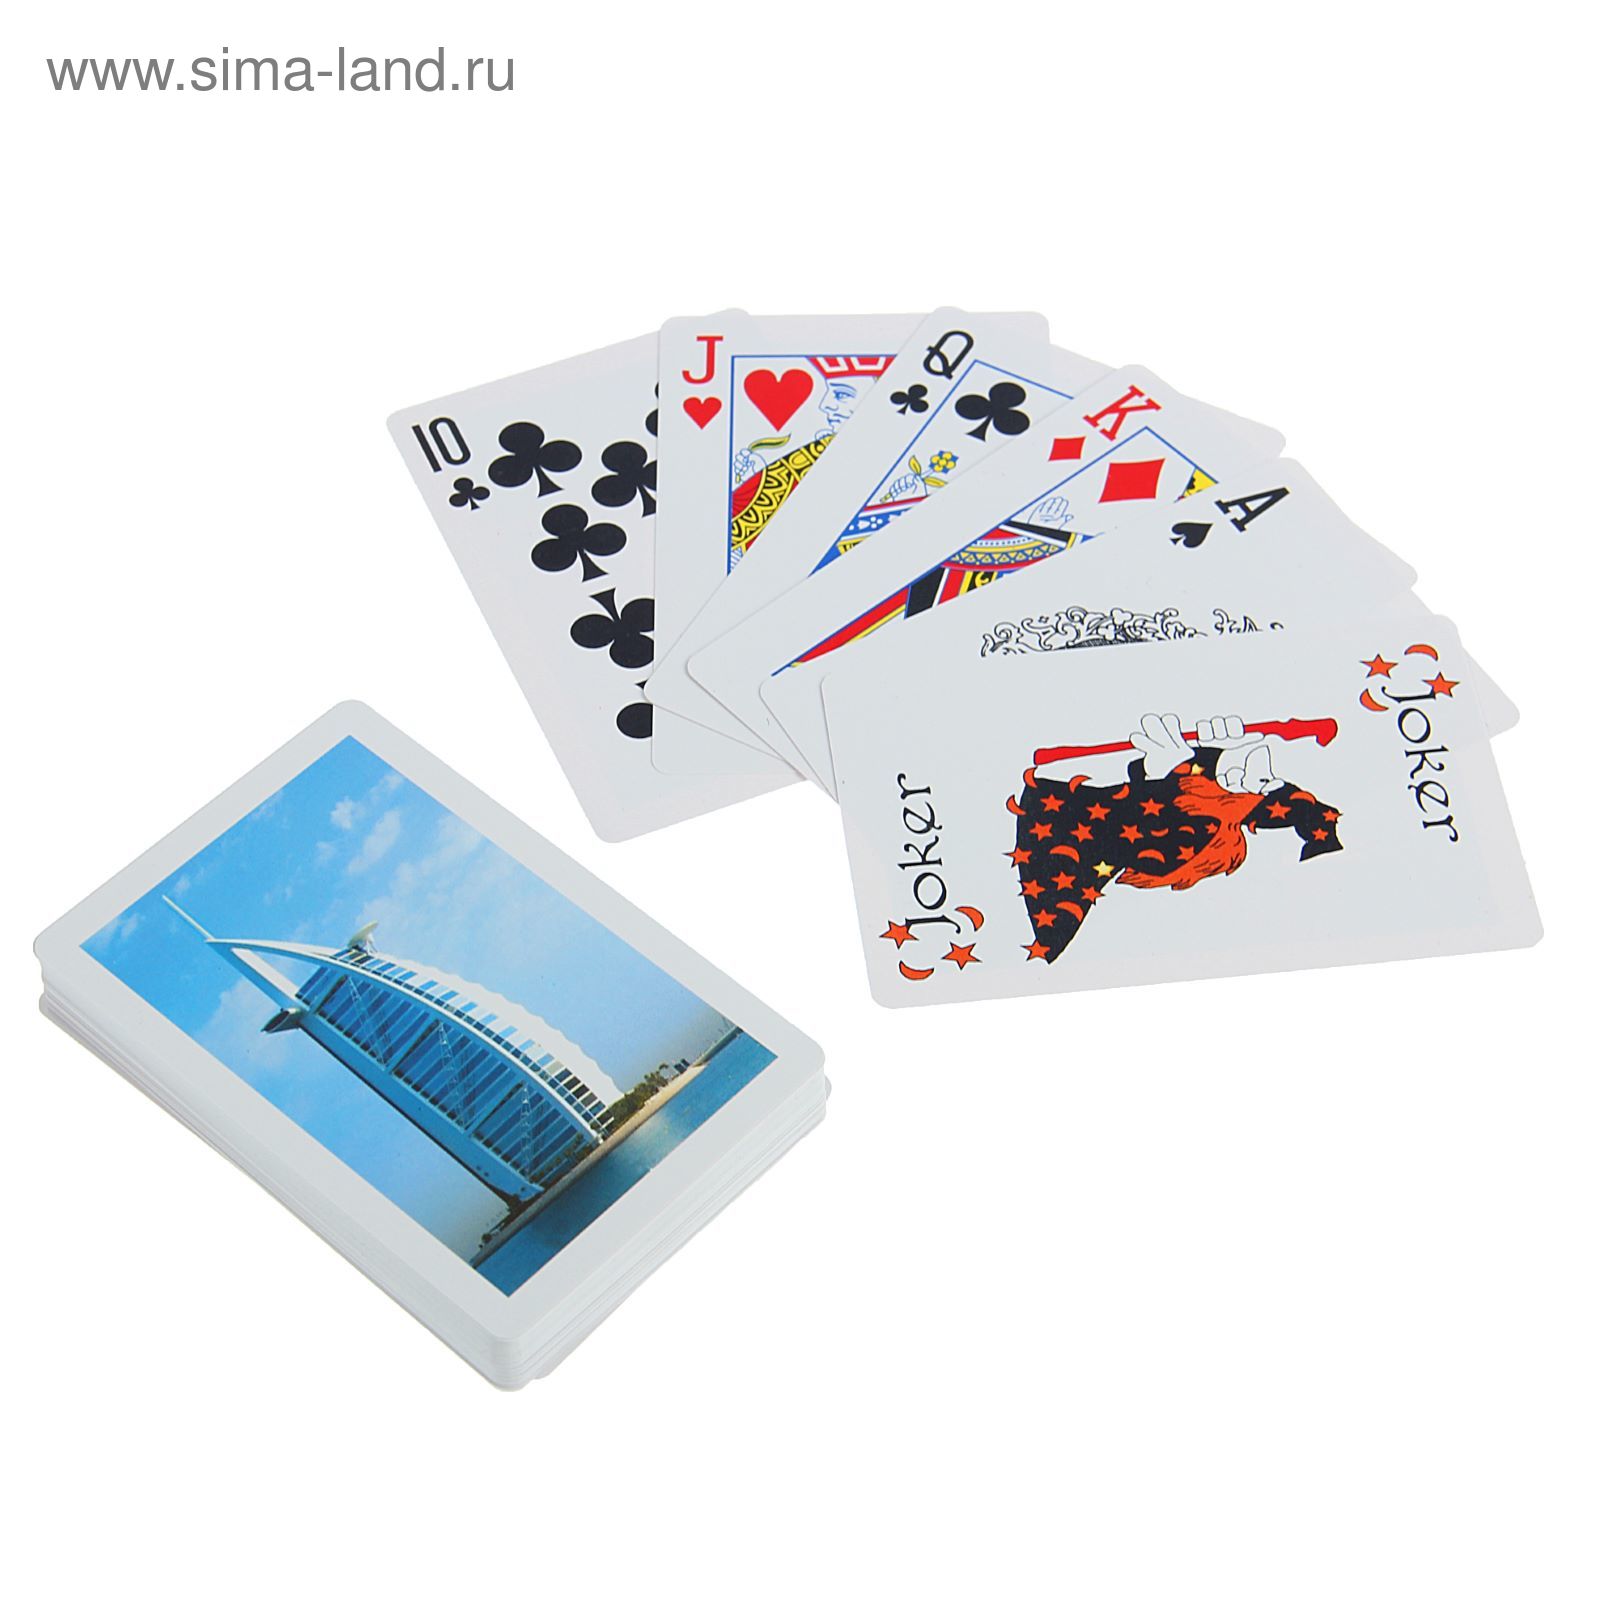 Карты игральные пластиковые "Эмираты", 54 шт., 23 мкм, 8,8 × 5,7 см, пластиковый футляр, микс